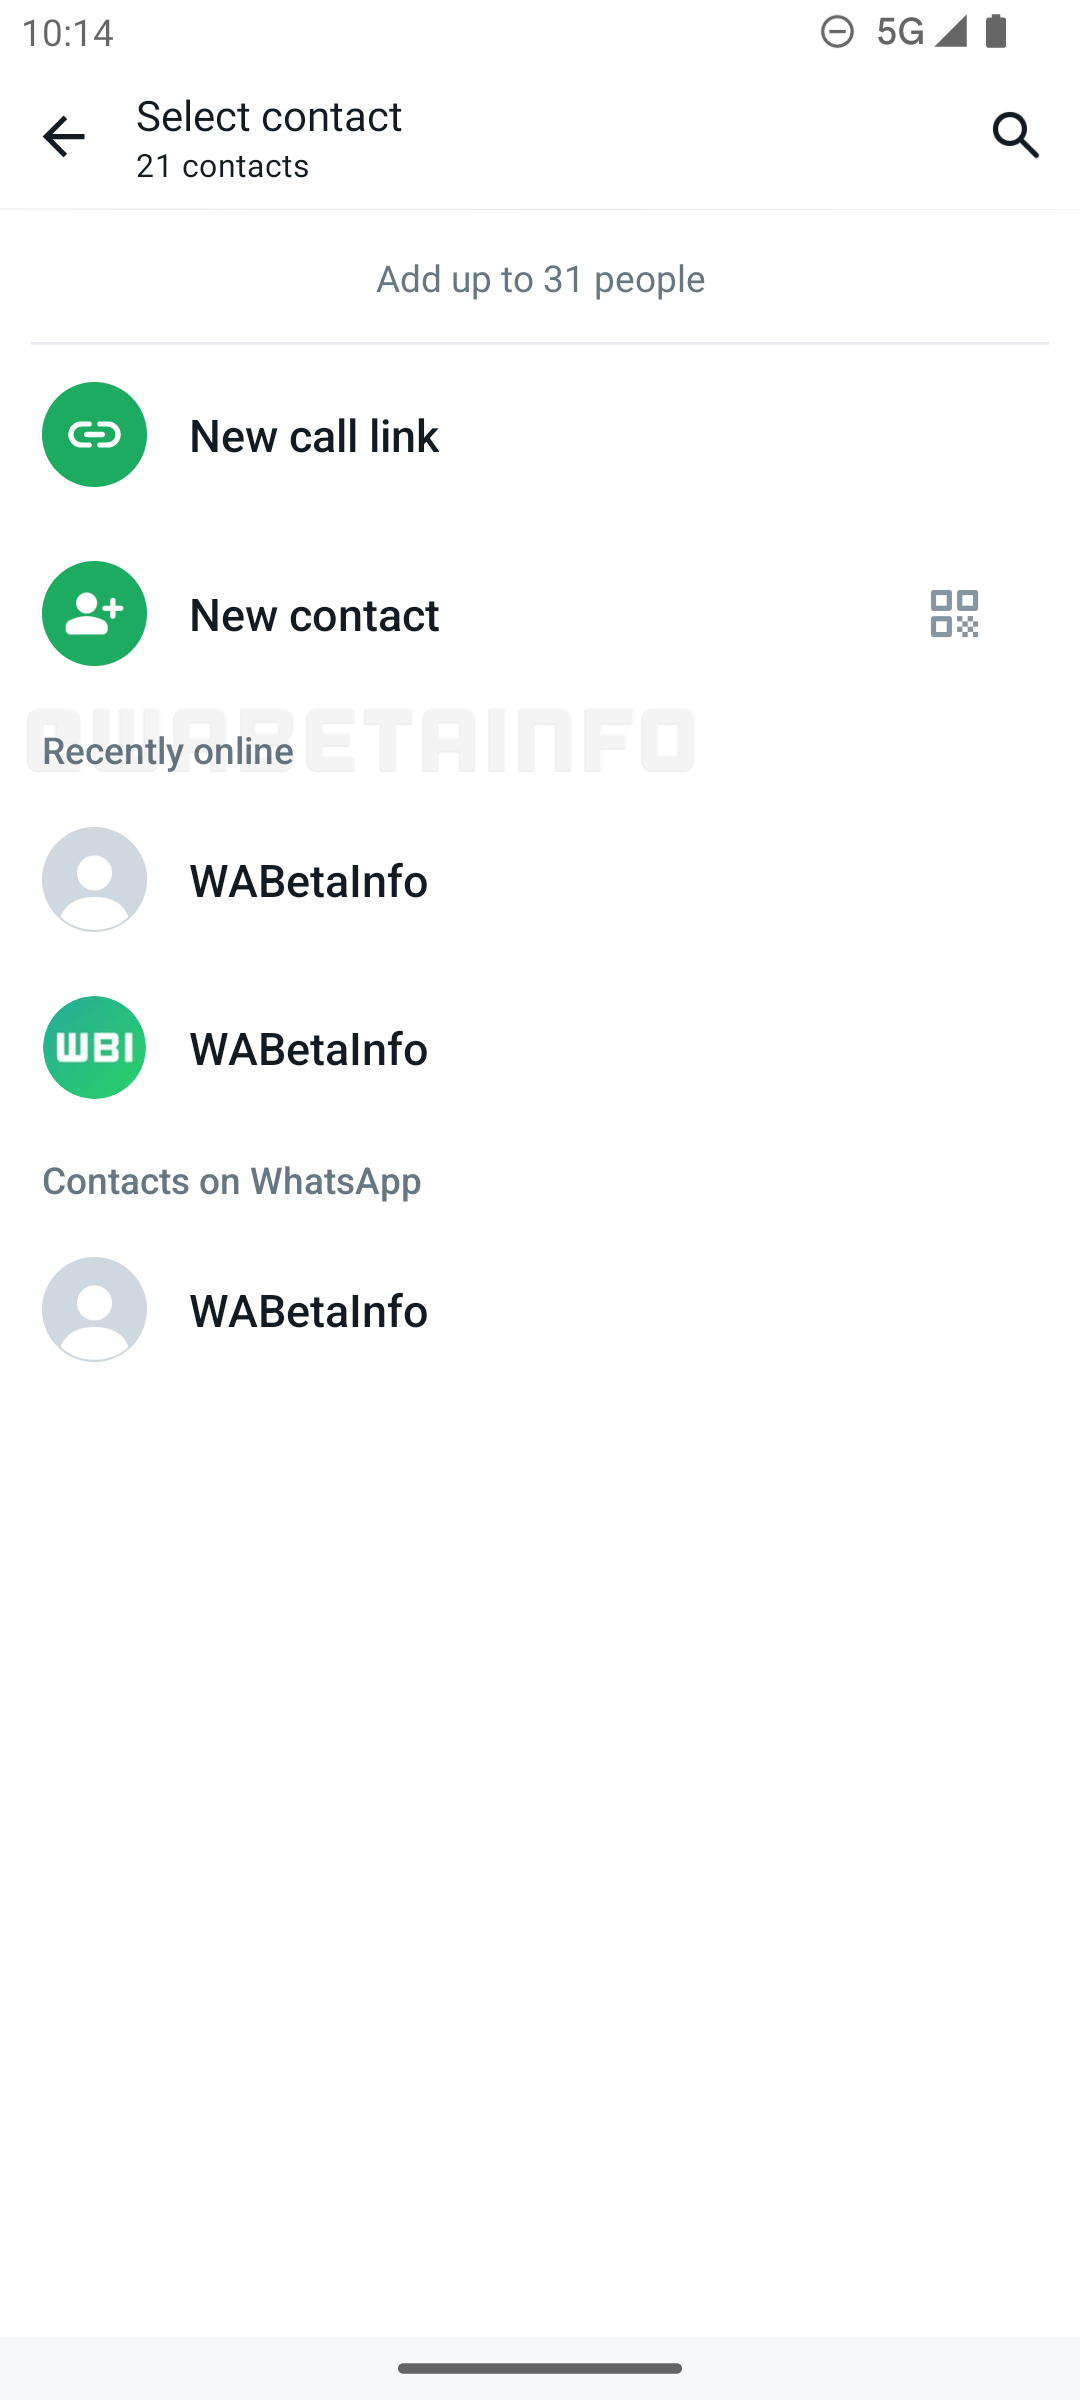 Contatos on-line recentes do WhatsApp